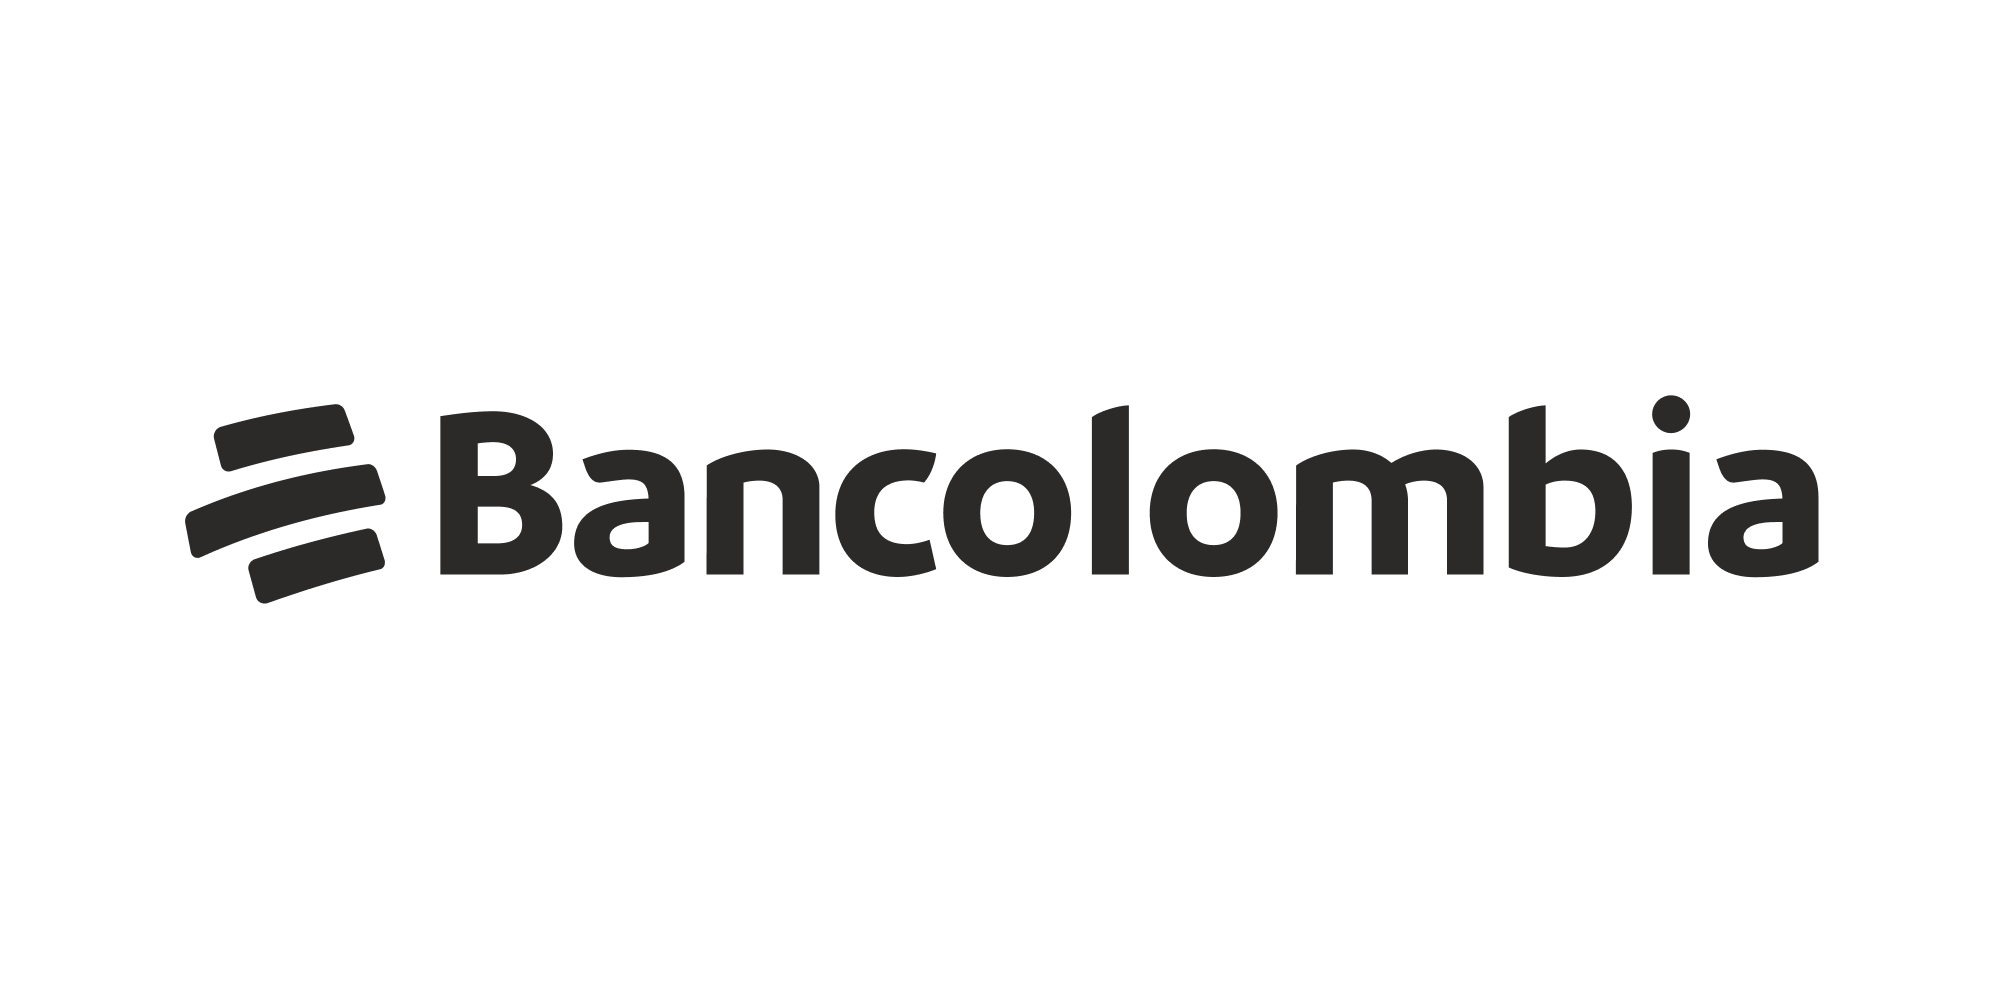 Bancolombia procesos seguros